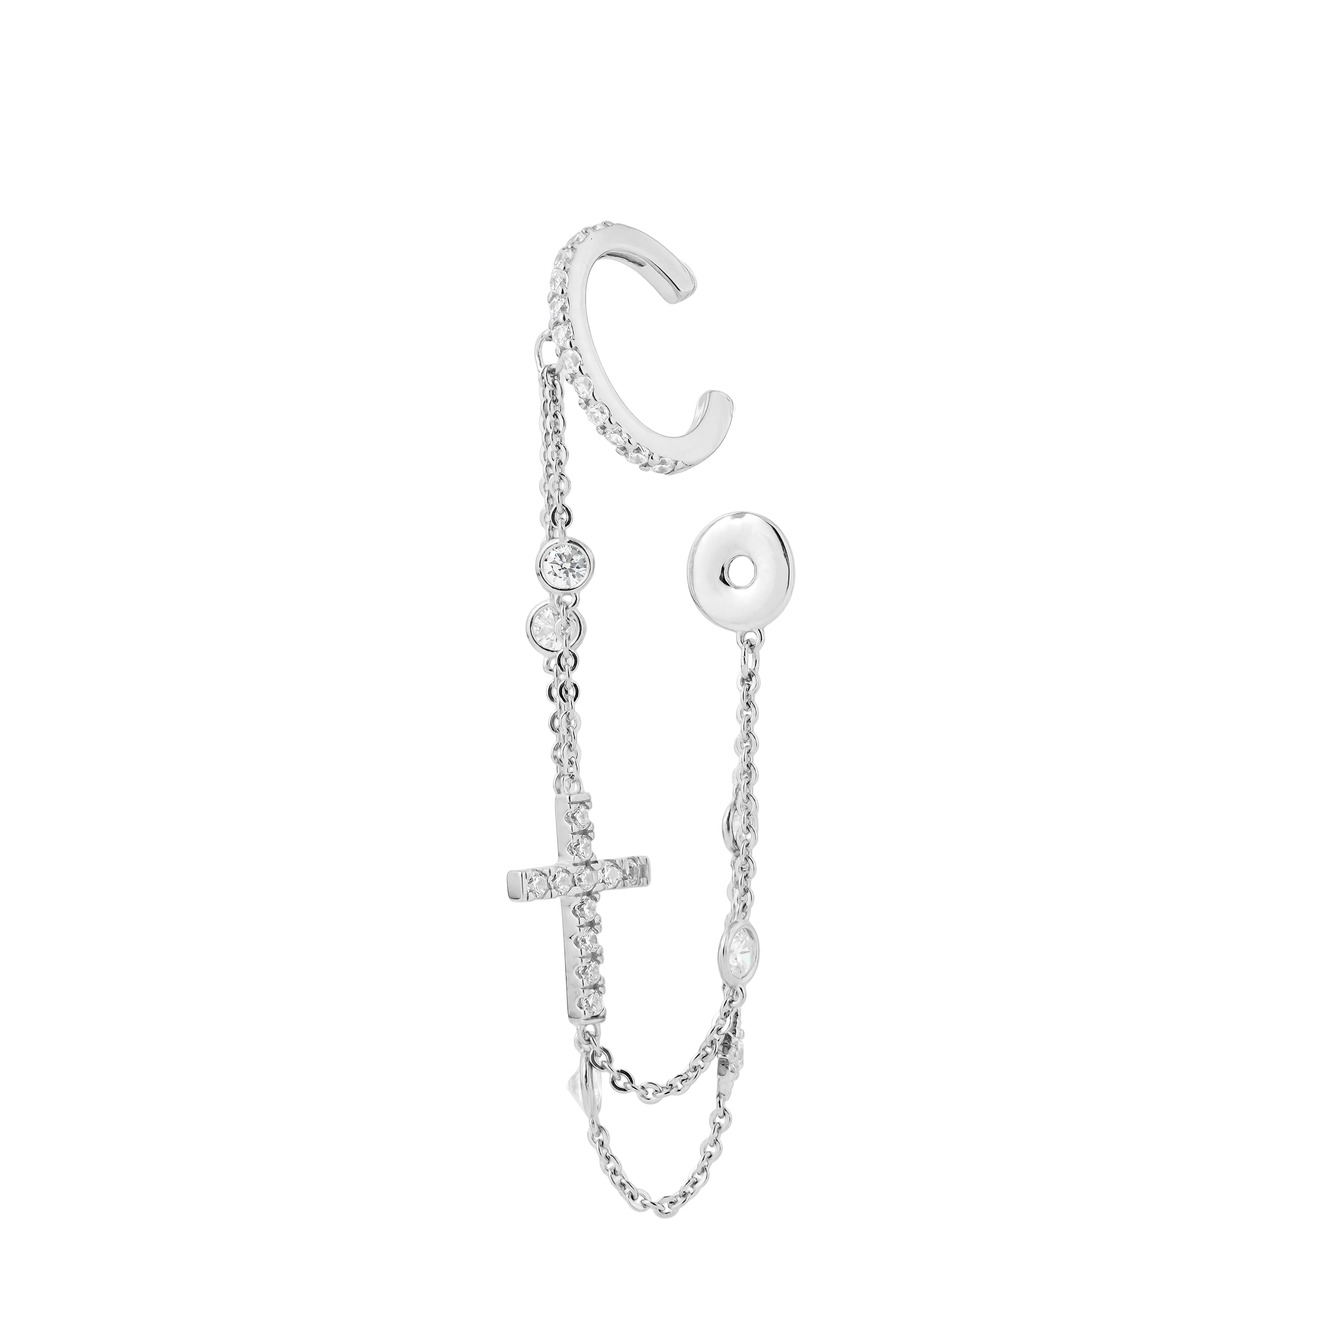 SKYE Серебряный кафф с цепочками в два ряда, кастами, прямым крестом и монеткой skye фактурный серебряный кафф из шариков